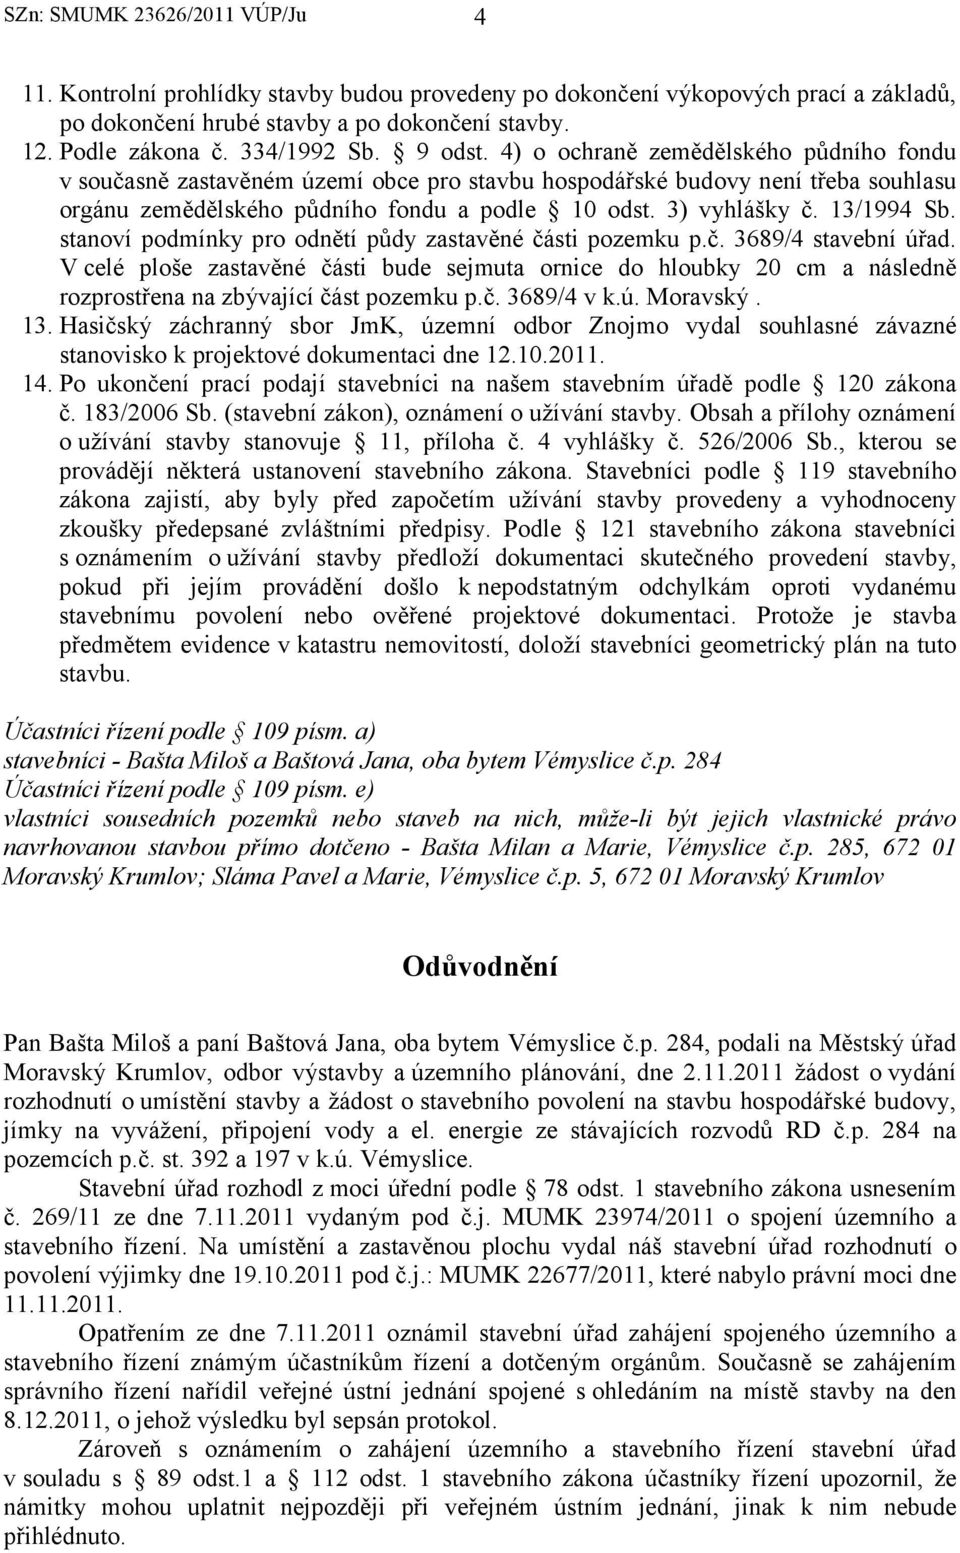 13/1994 Sb. stanoví podmínky pro odnětí půdy zastavěné části pozemku p.č. 3689/4 stavební úřad.